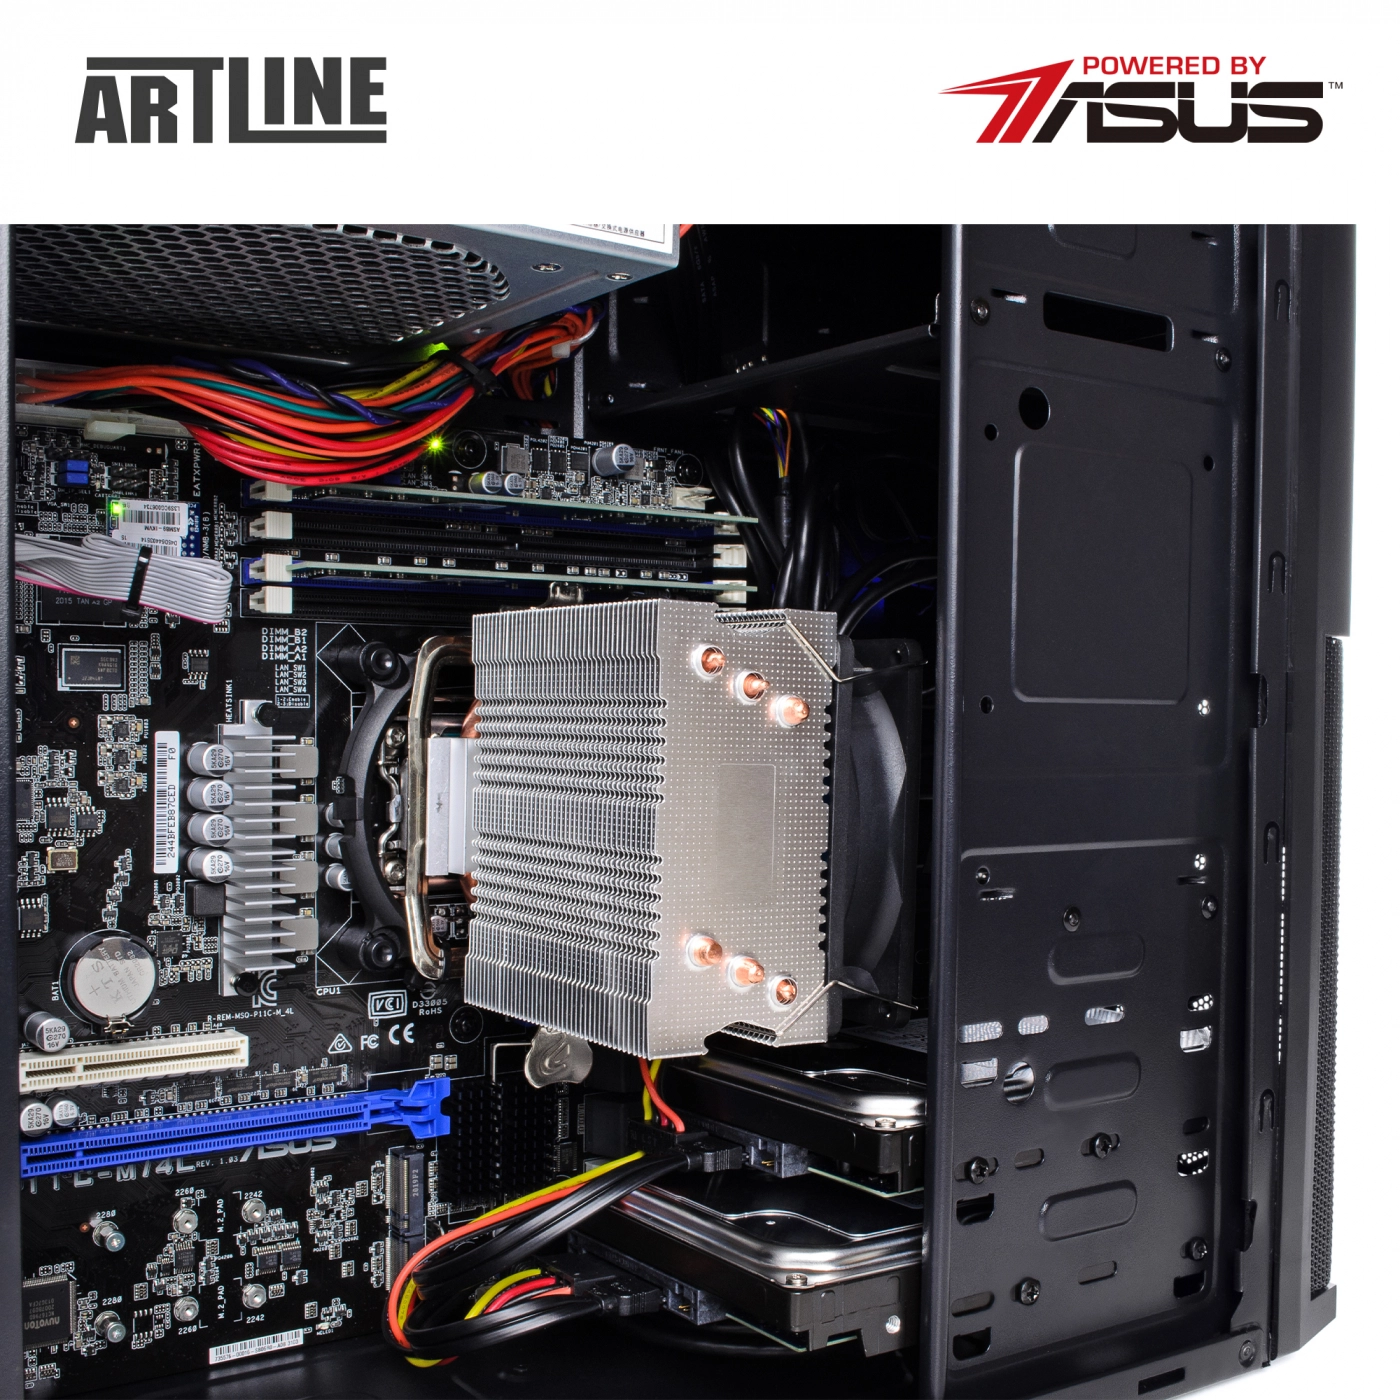 Купить Сервер ARTLINE Business T25v11 - фото 7